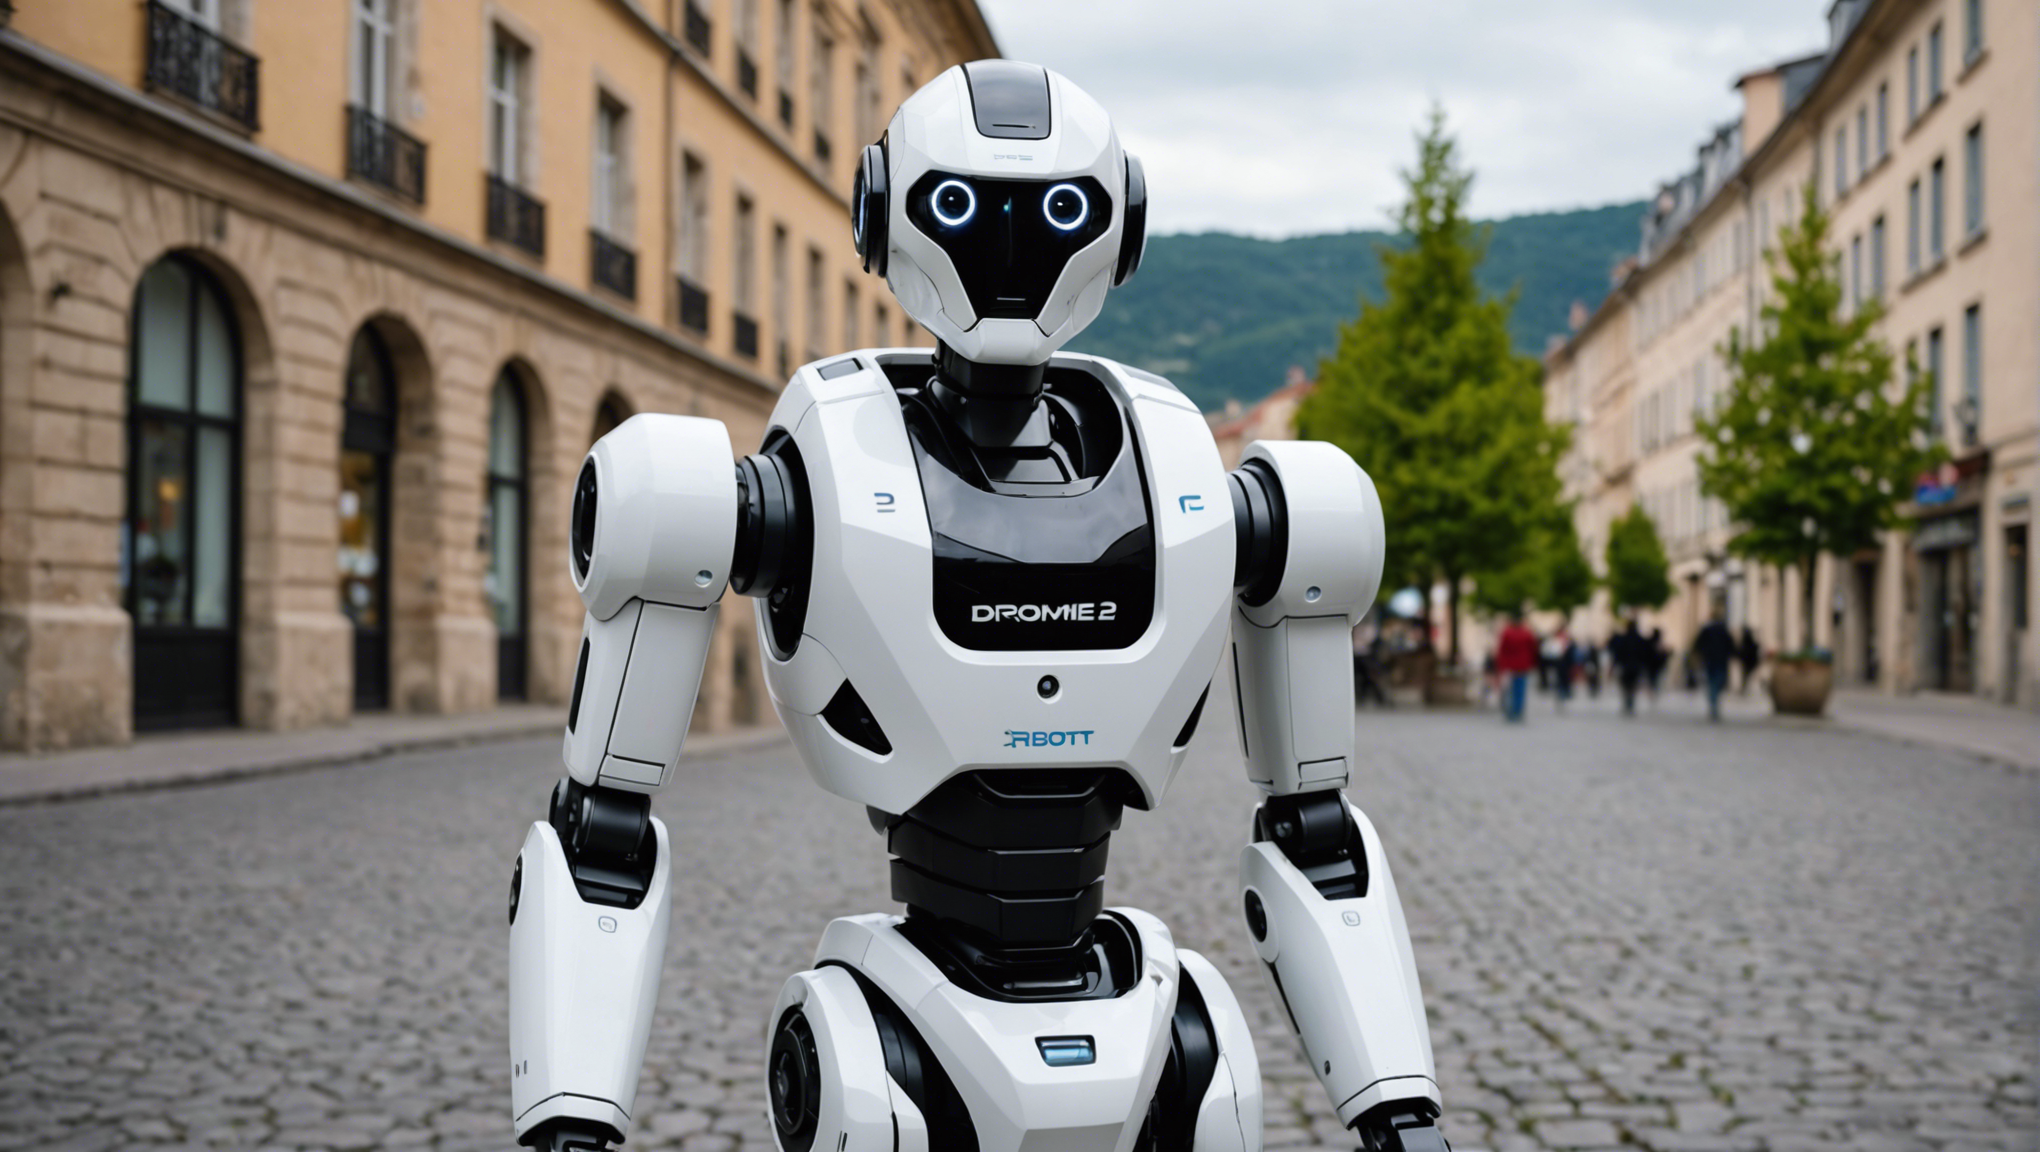 trouvez le robot qu'il vous faut à louer en drôme (26) pour votre entreprise. découvrez nos offres de location de robots pour répondre à vos besoins professionnels.